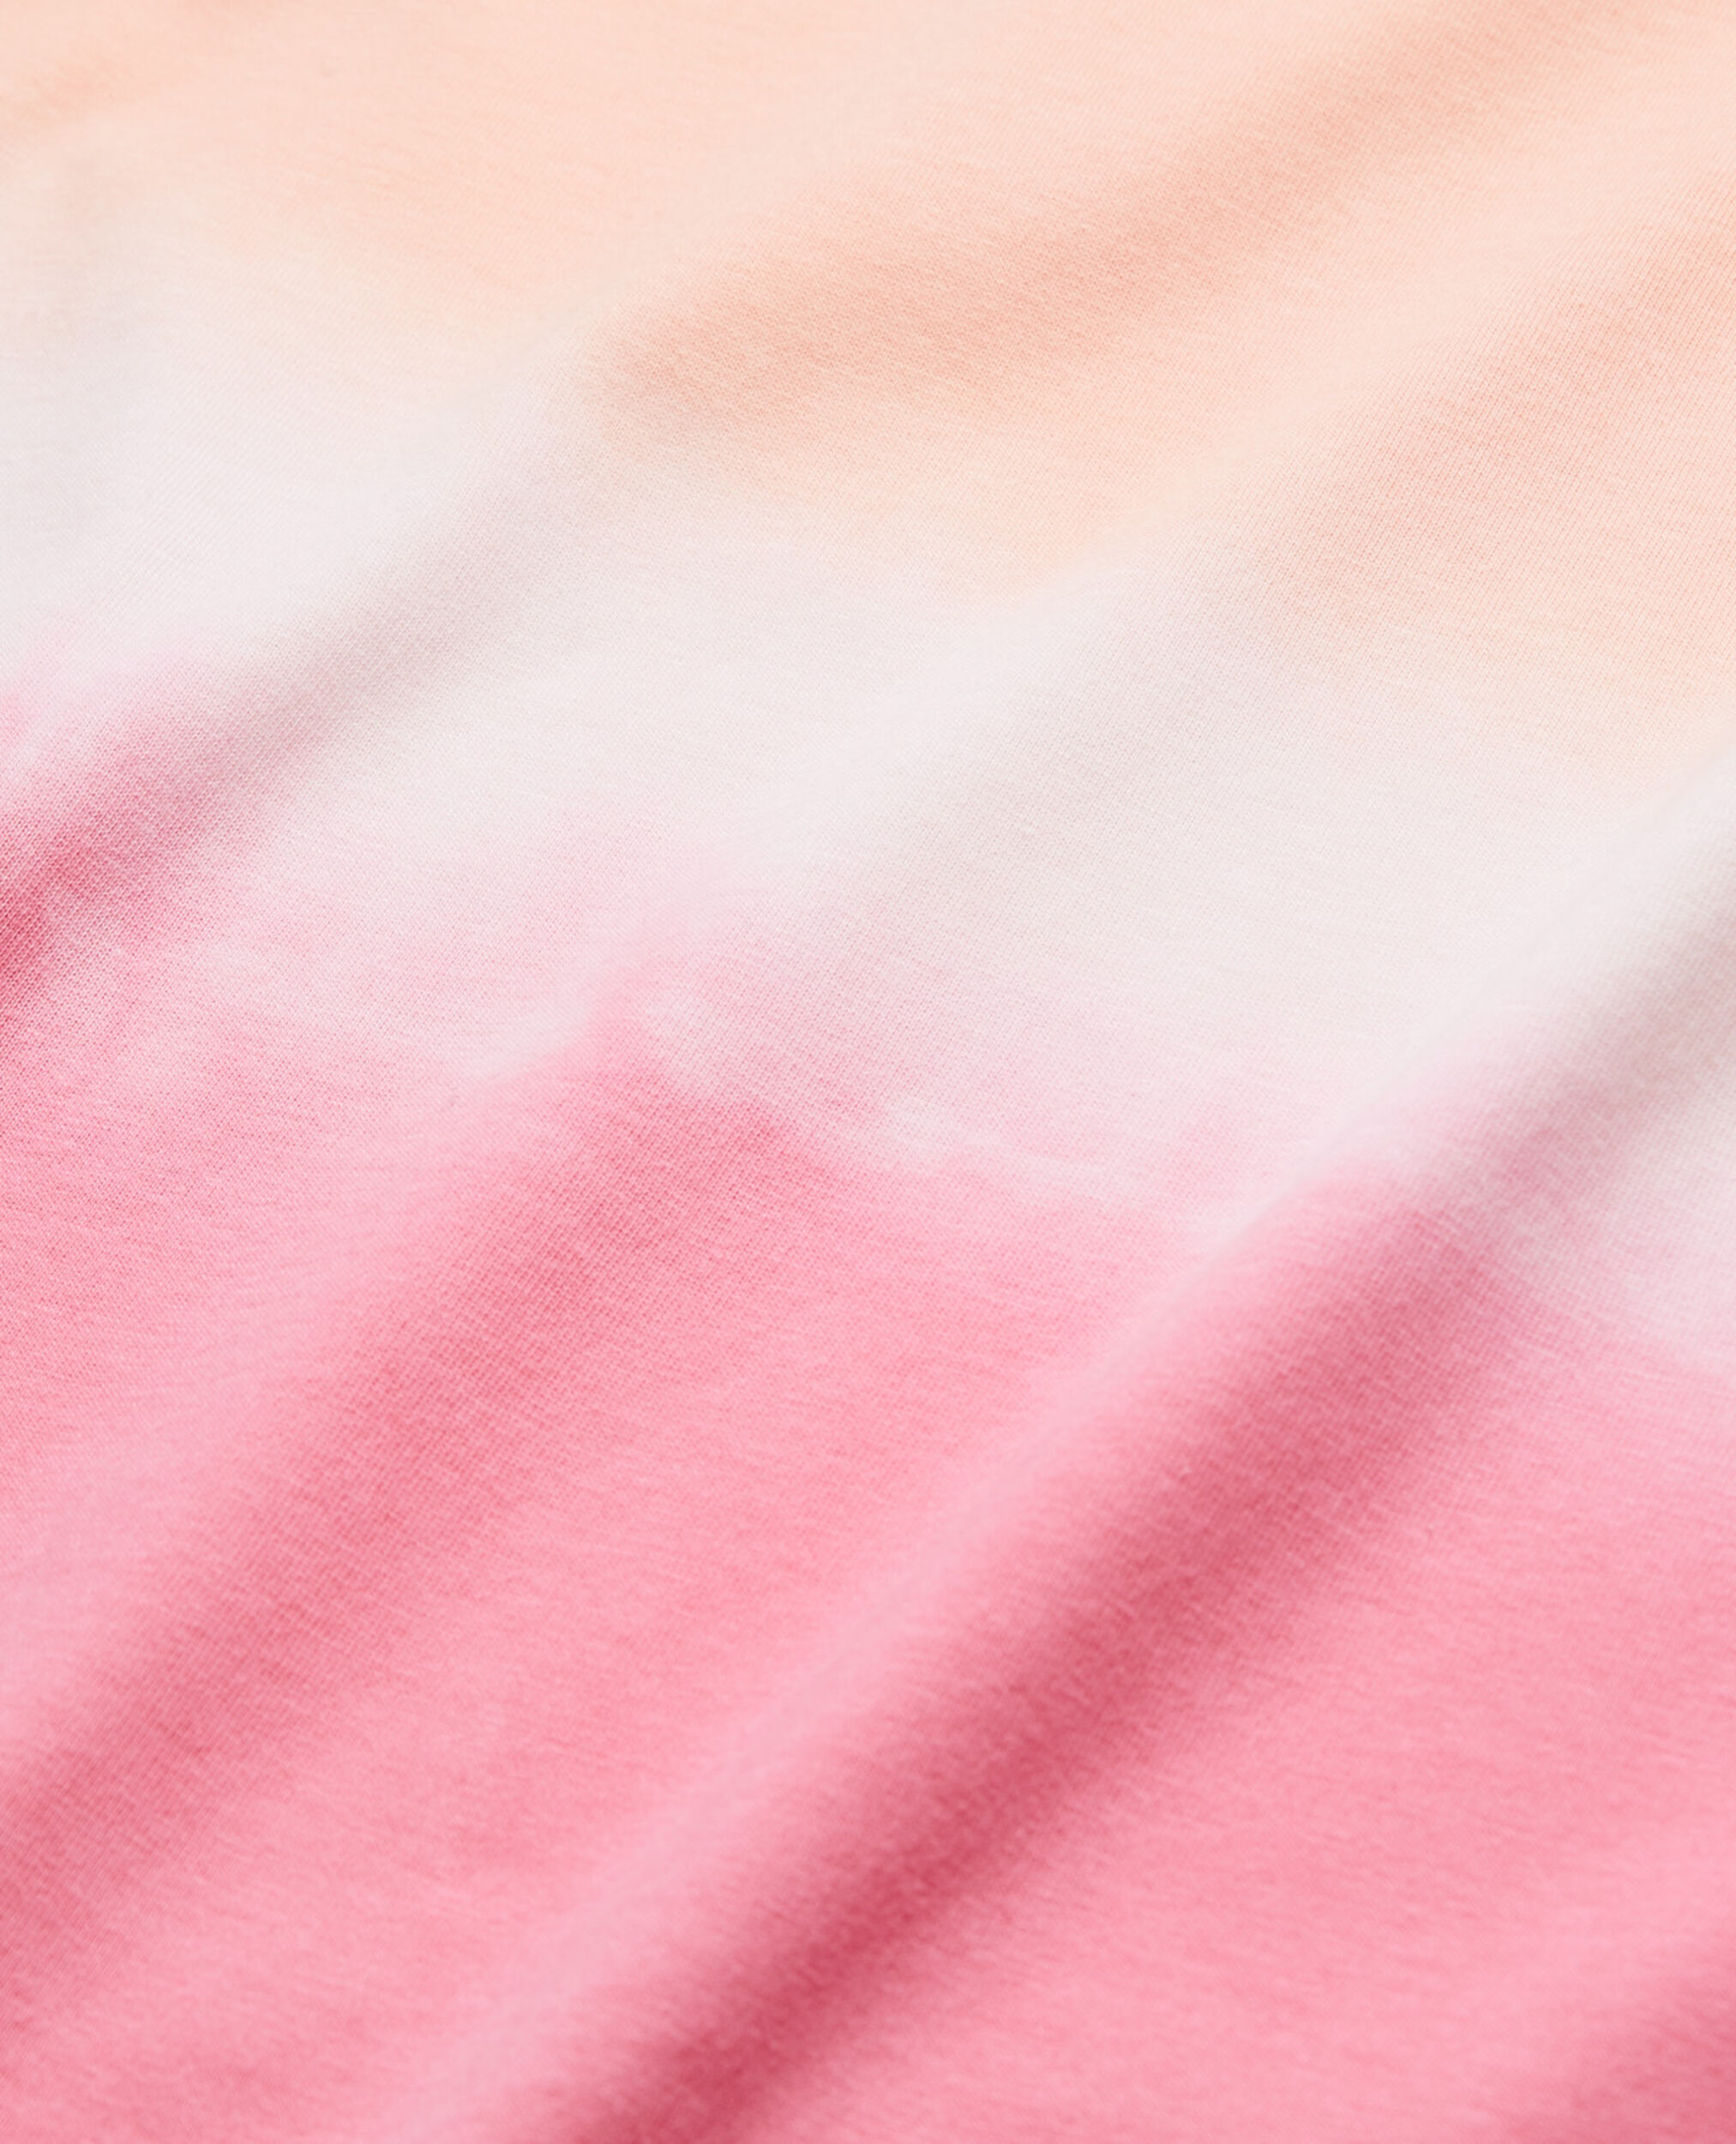 T-Shirt aus Baumwolle in Rosa und Weiß, BLUSH, hi-res image number null